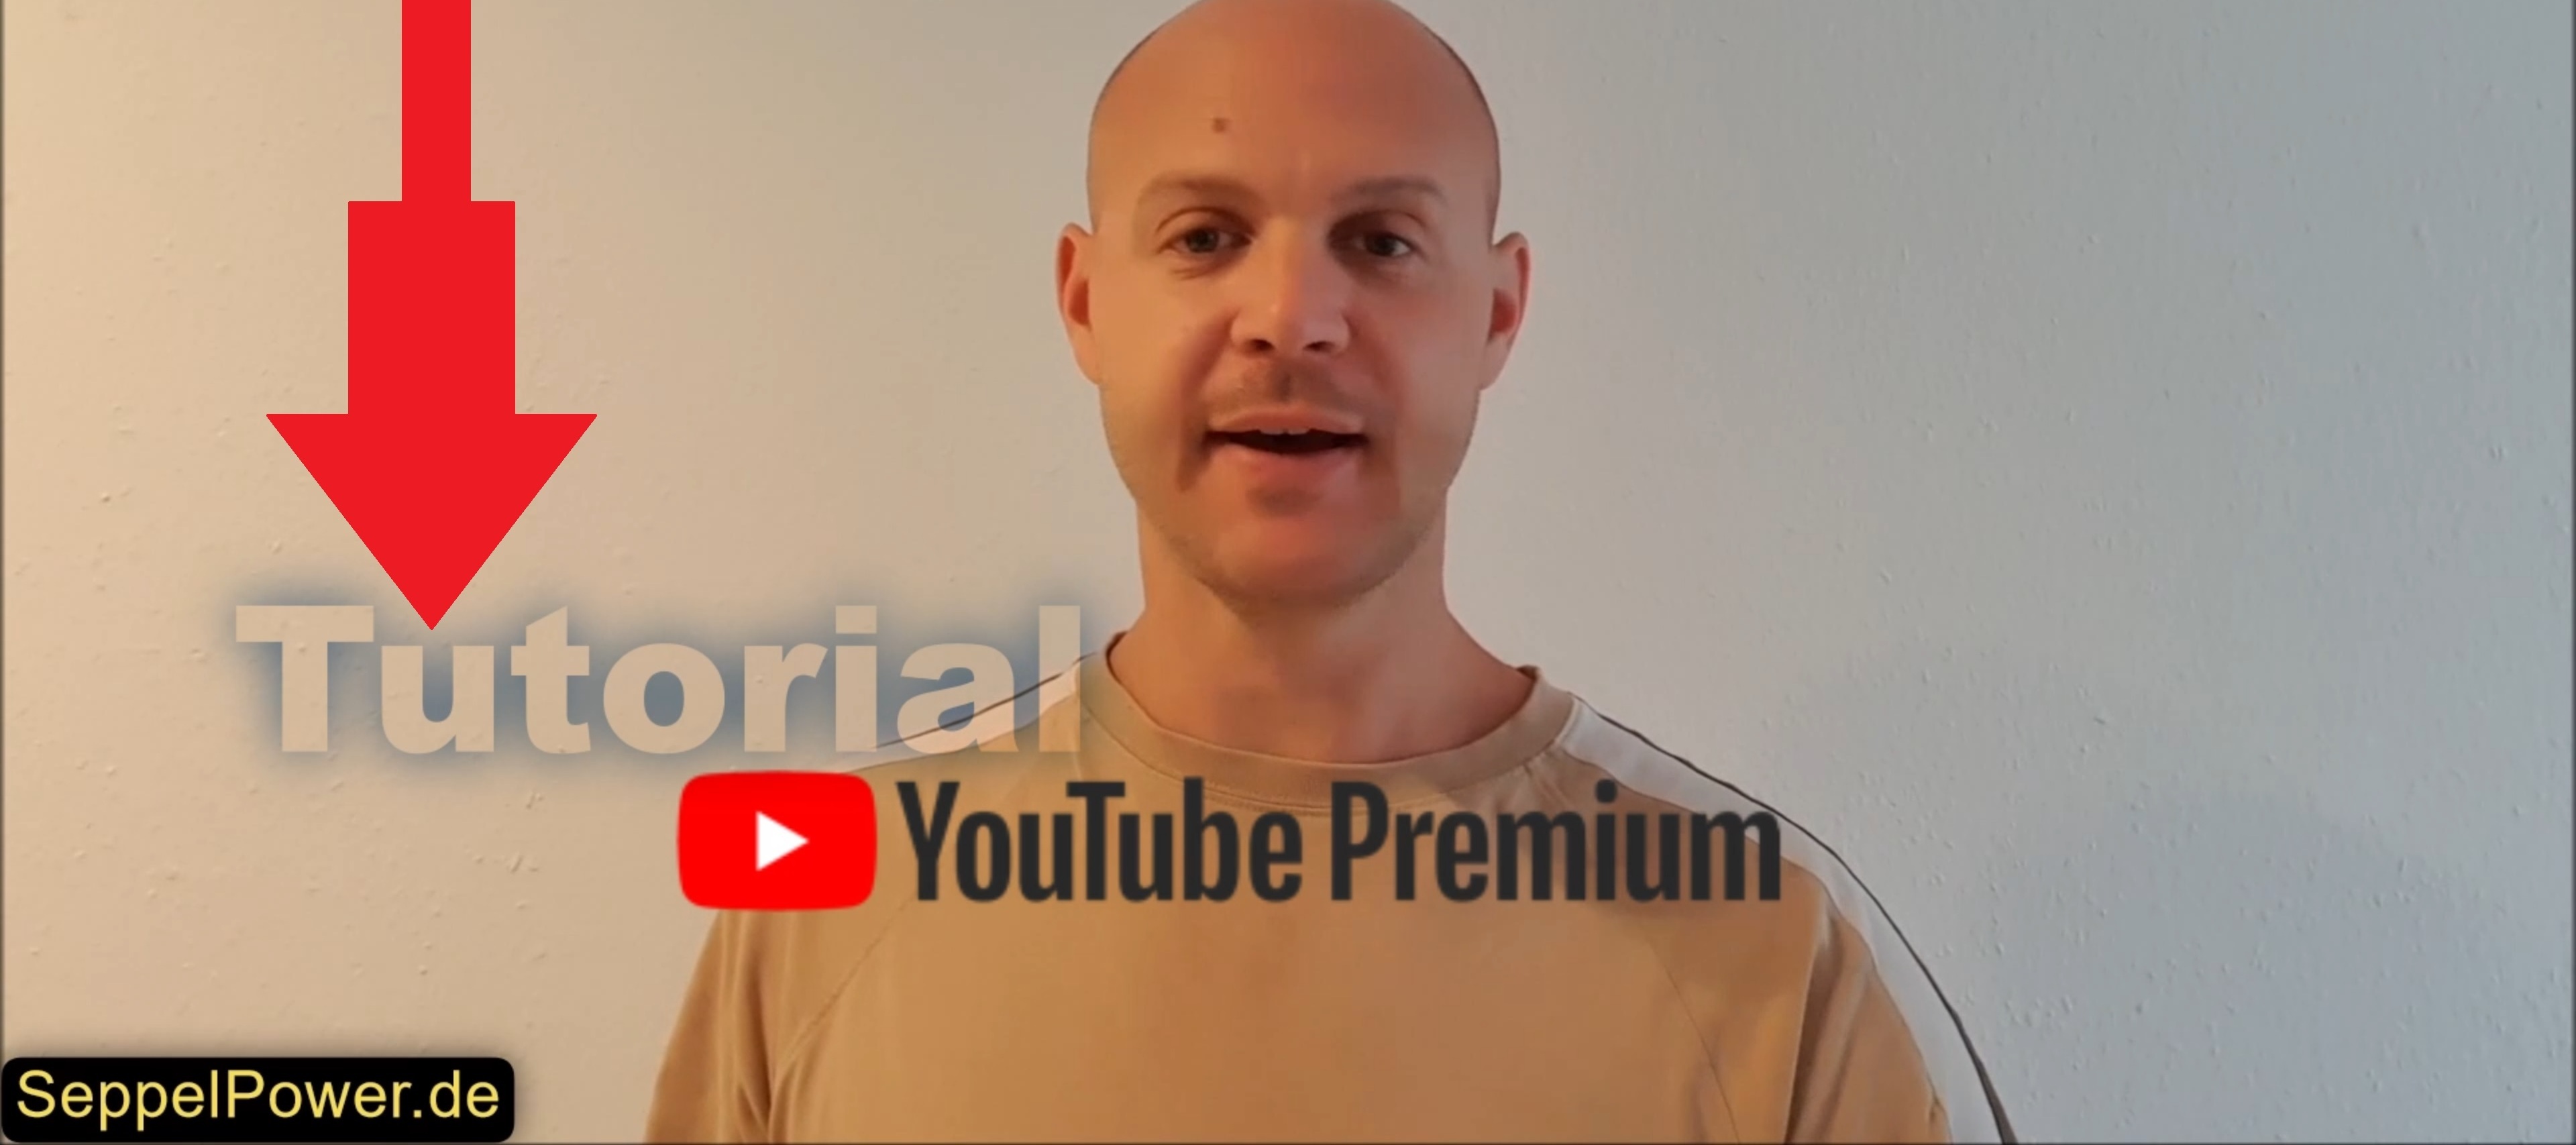 Tutorial: YouTube Premium erklärt und aktiviert